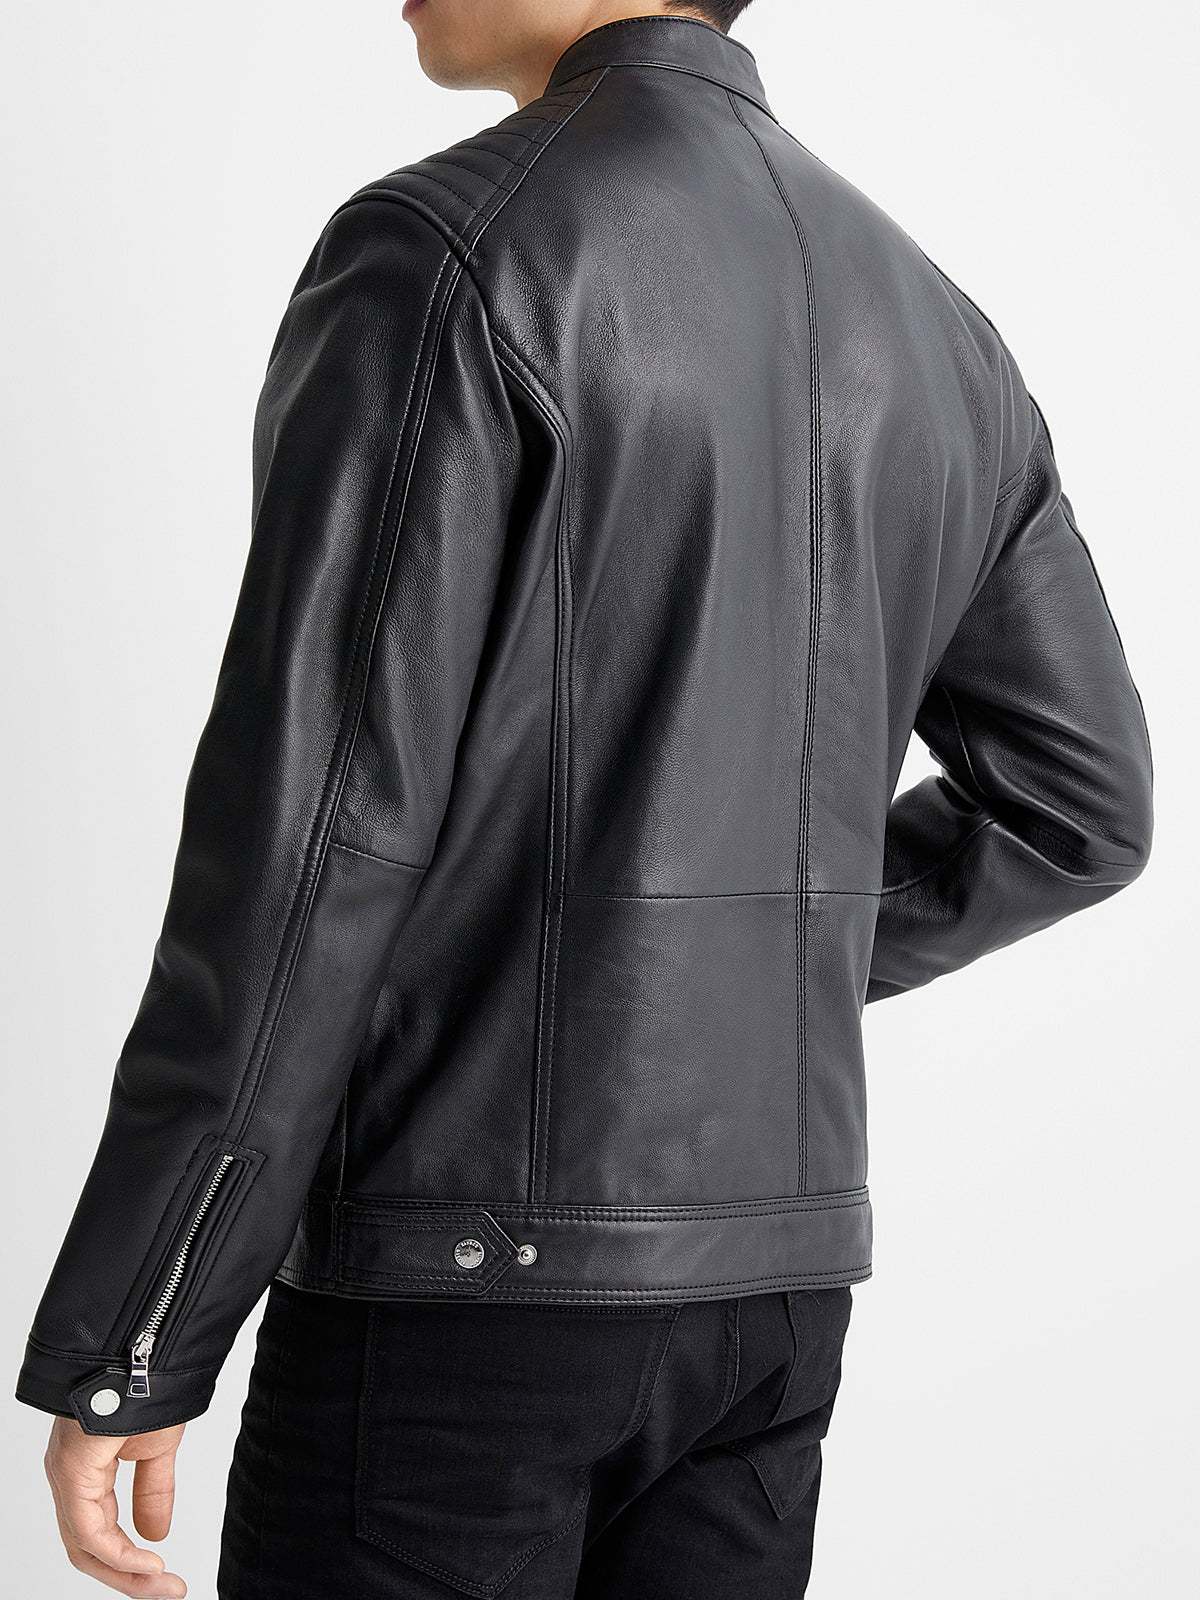 Mens Top Stiched Black Biker Leather Jacket –  LJ